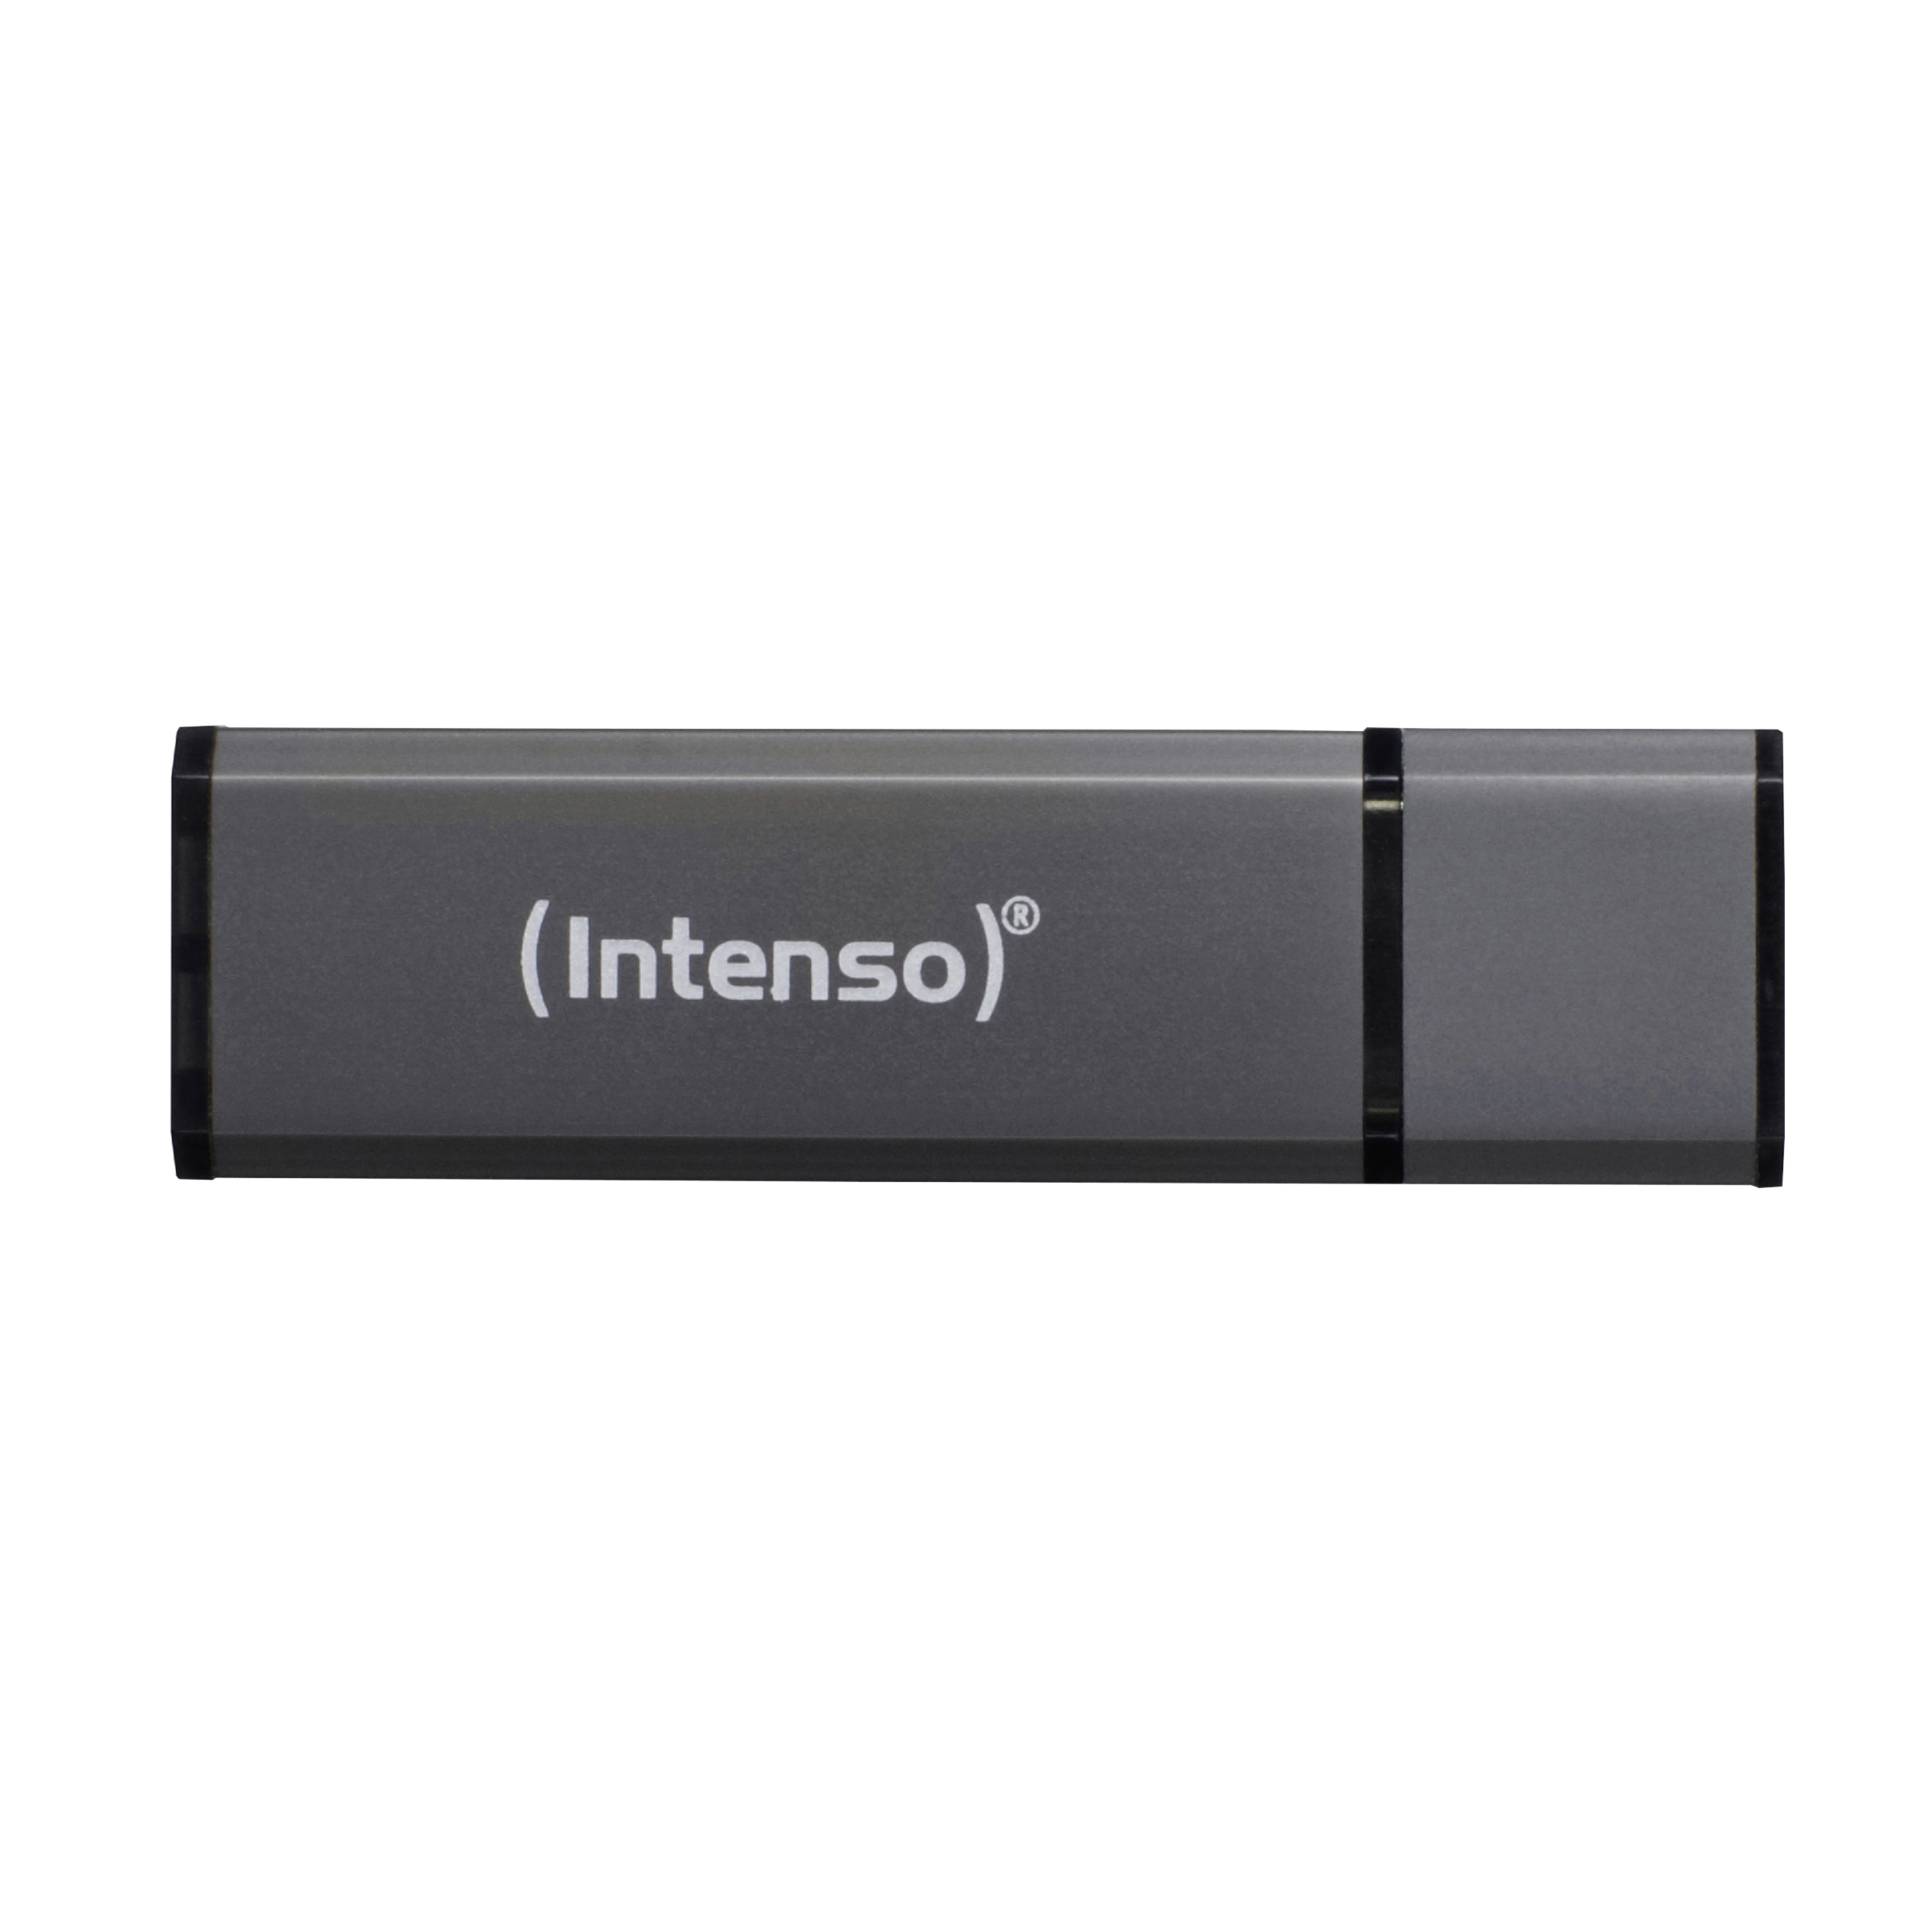 Intenso Alu Line antracite 16GB USB Stick 2.0